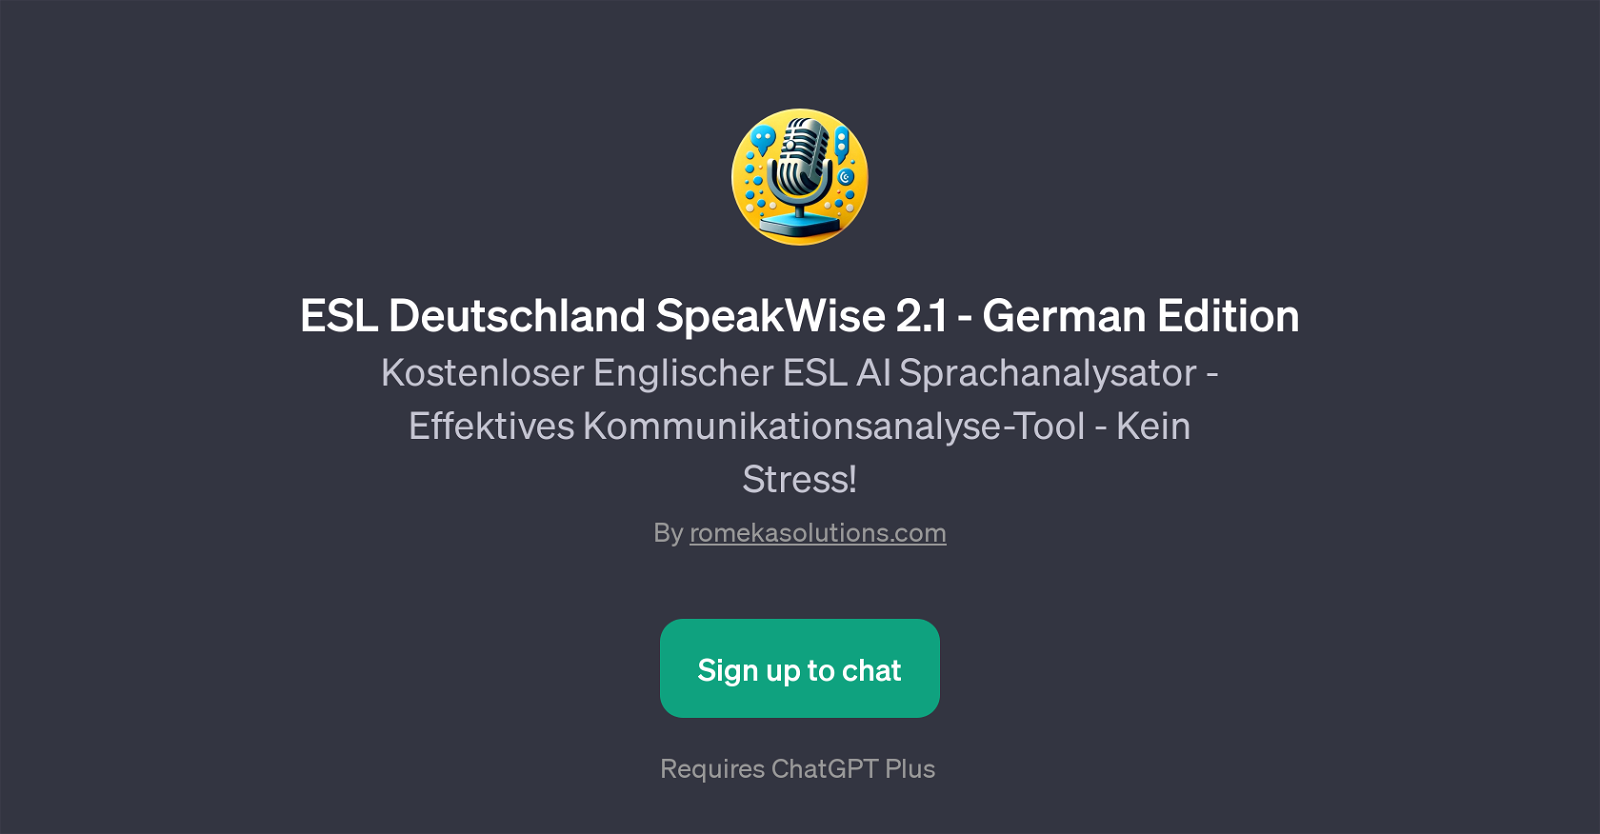 ESL Deutschland SpeakWise 2.1 - German Edition website